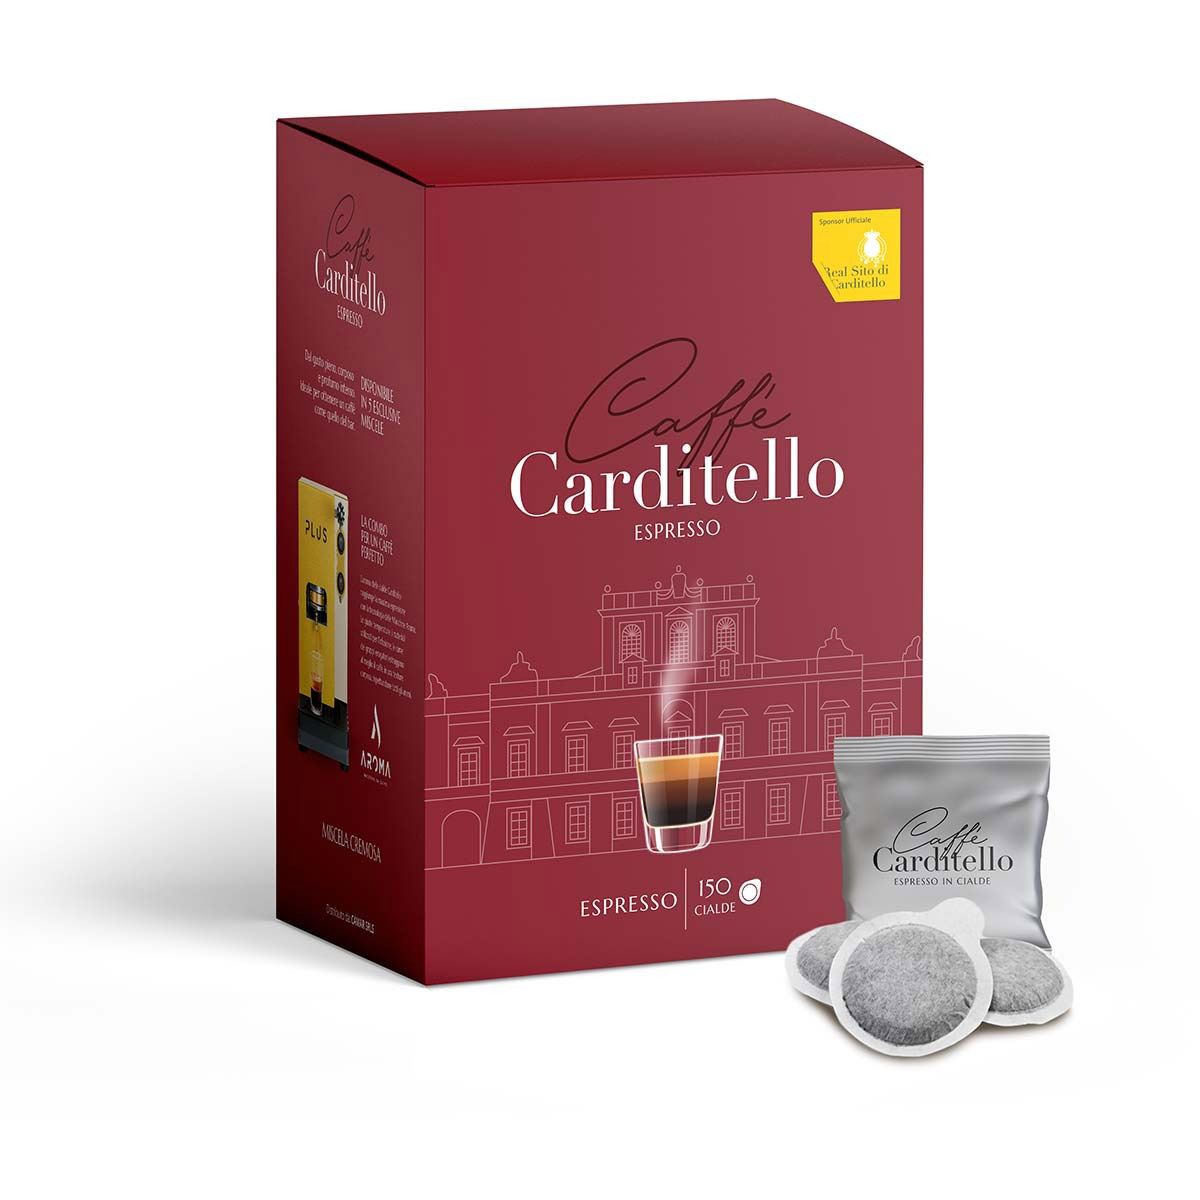 Carditello Cremoso Coffee Aroma (150 pods)